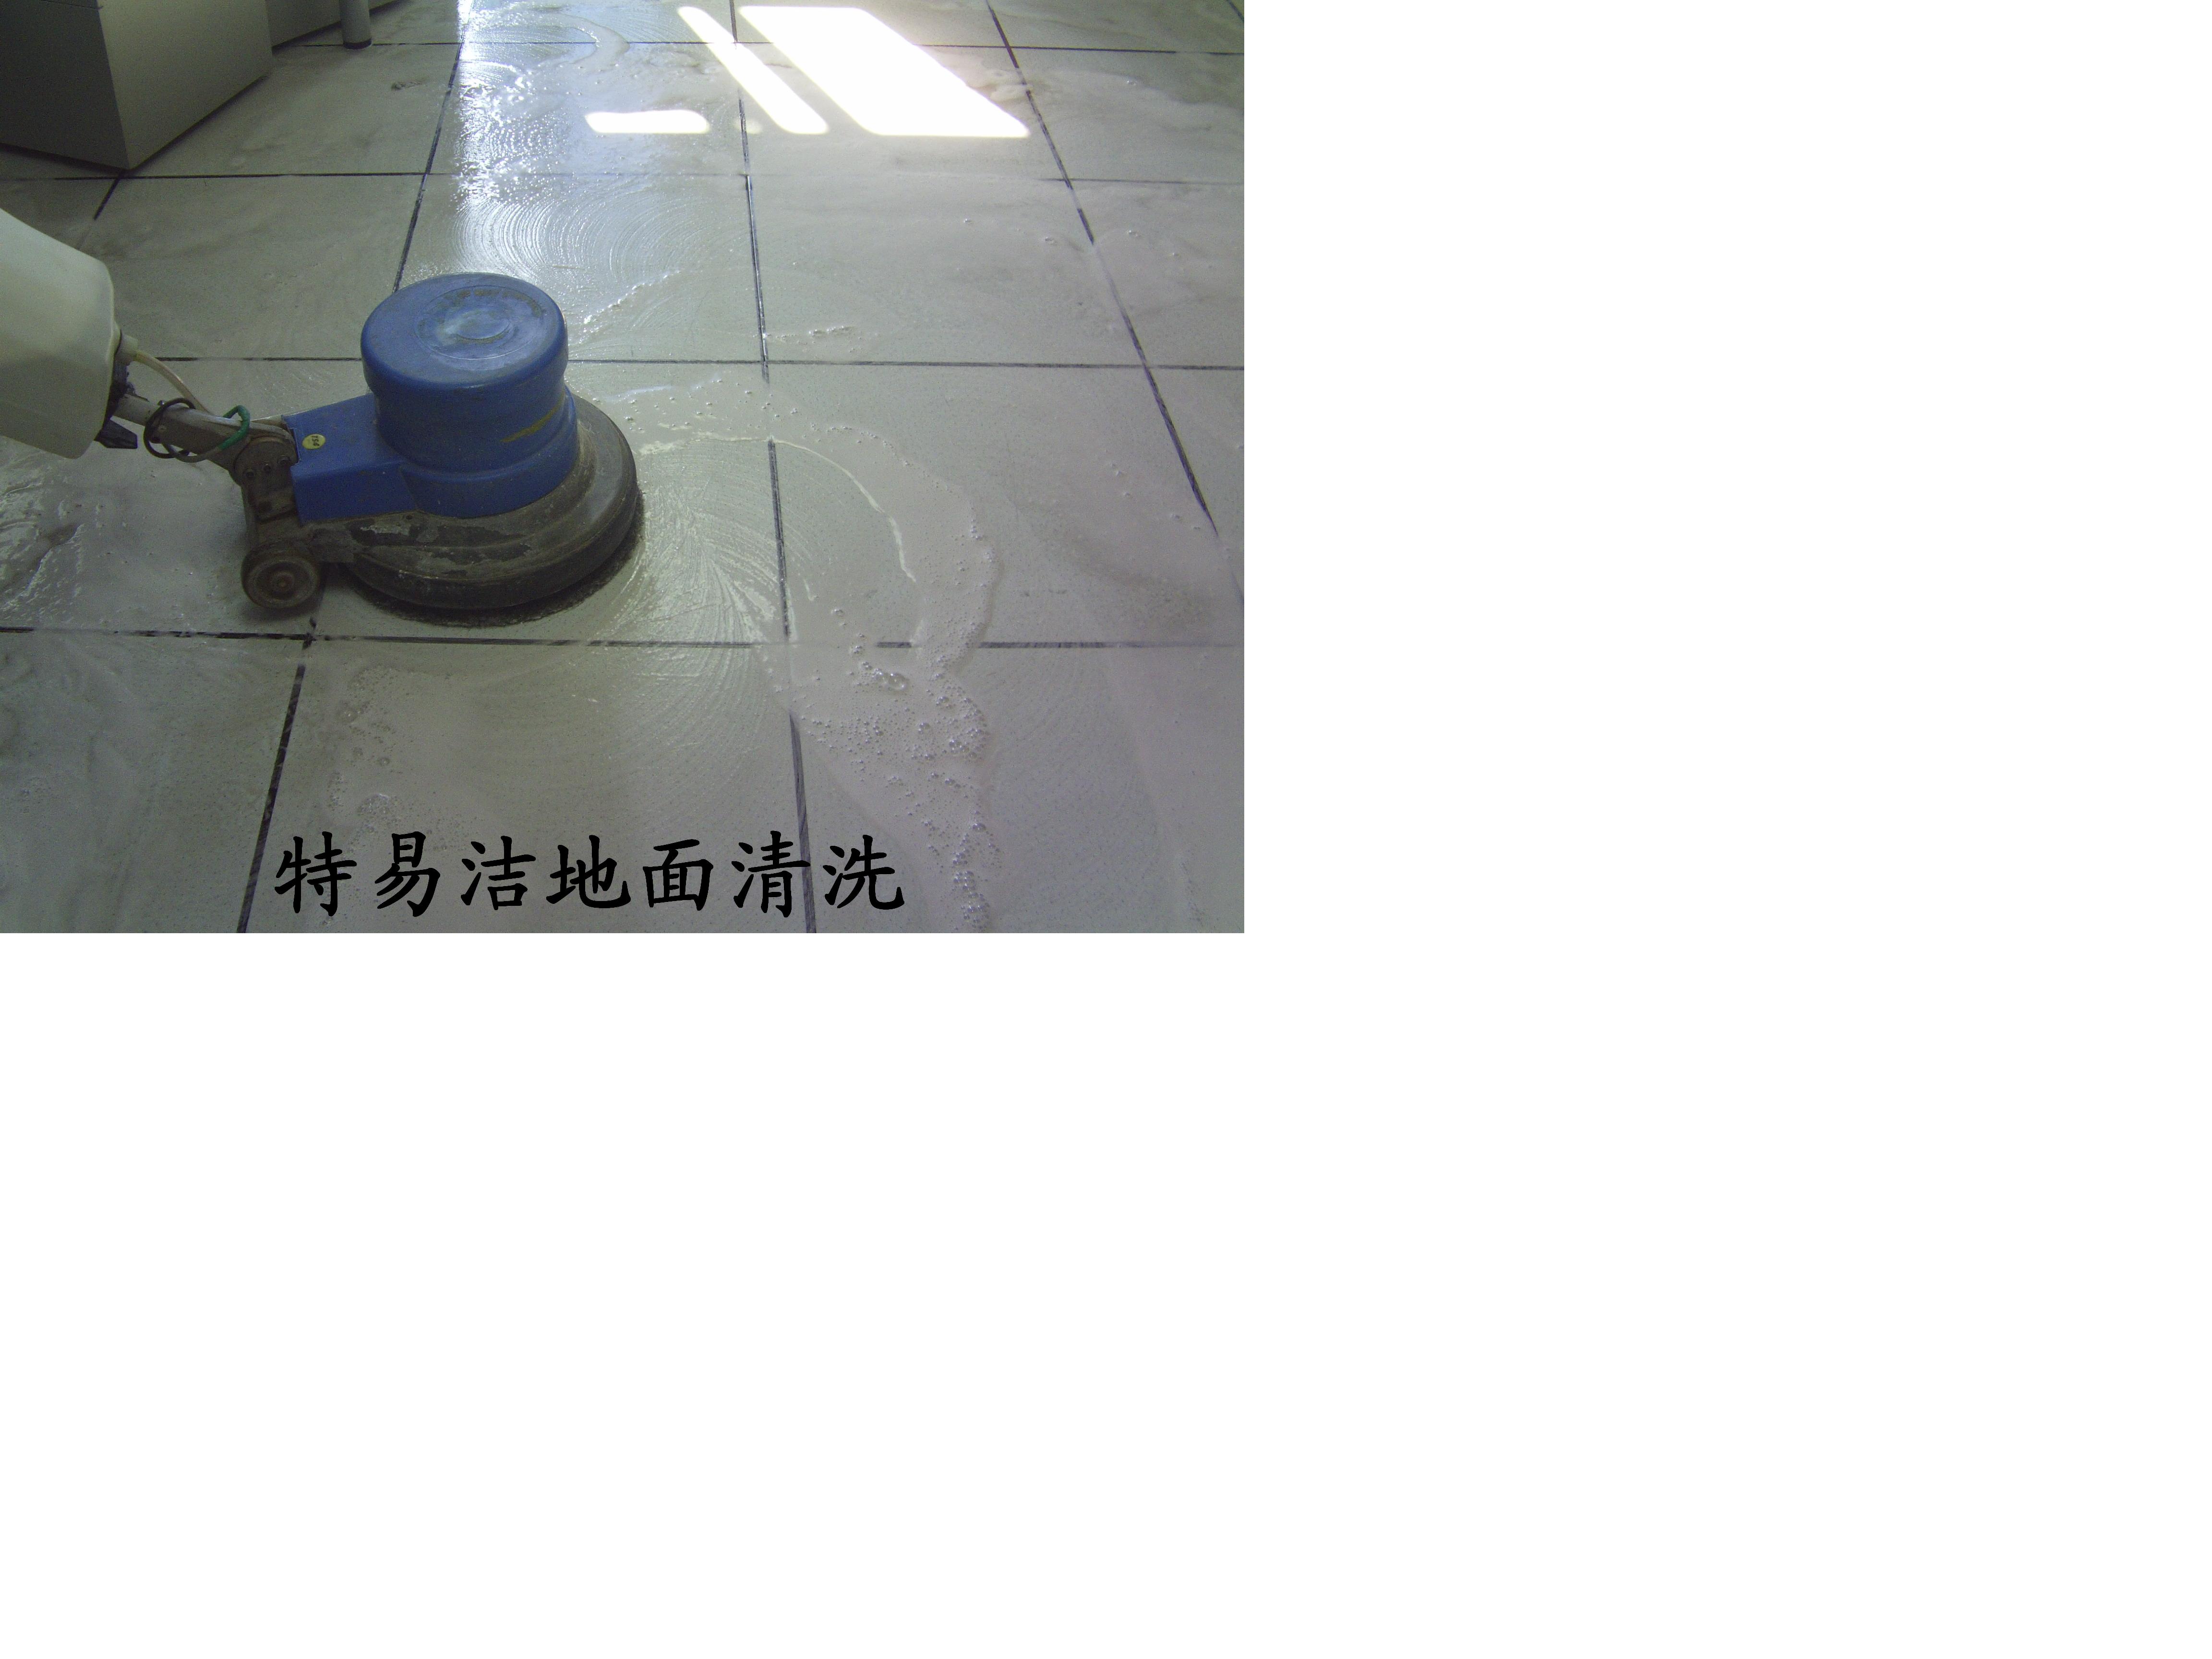 南京地面清洗  南京地面清洗公司  南京地面清洁价格图片